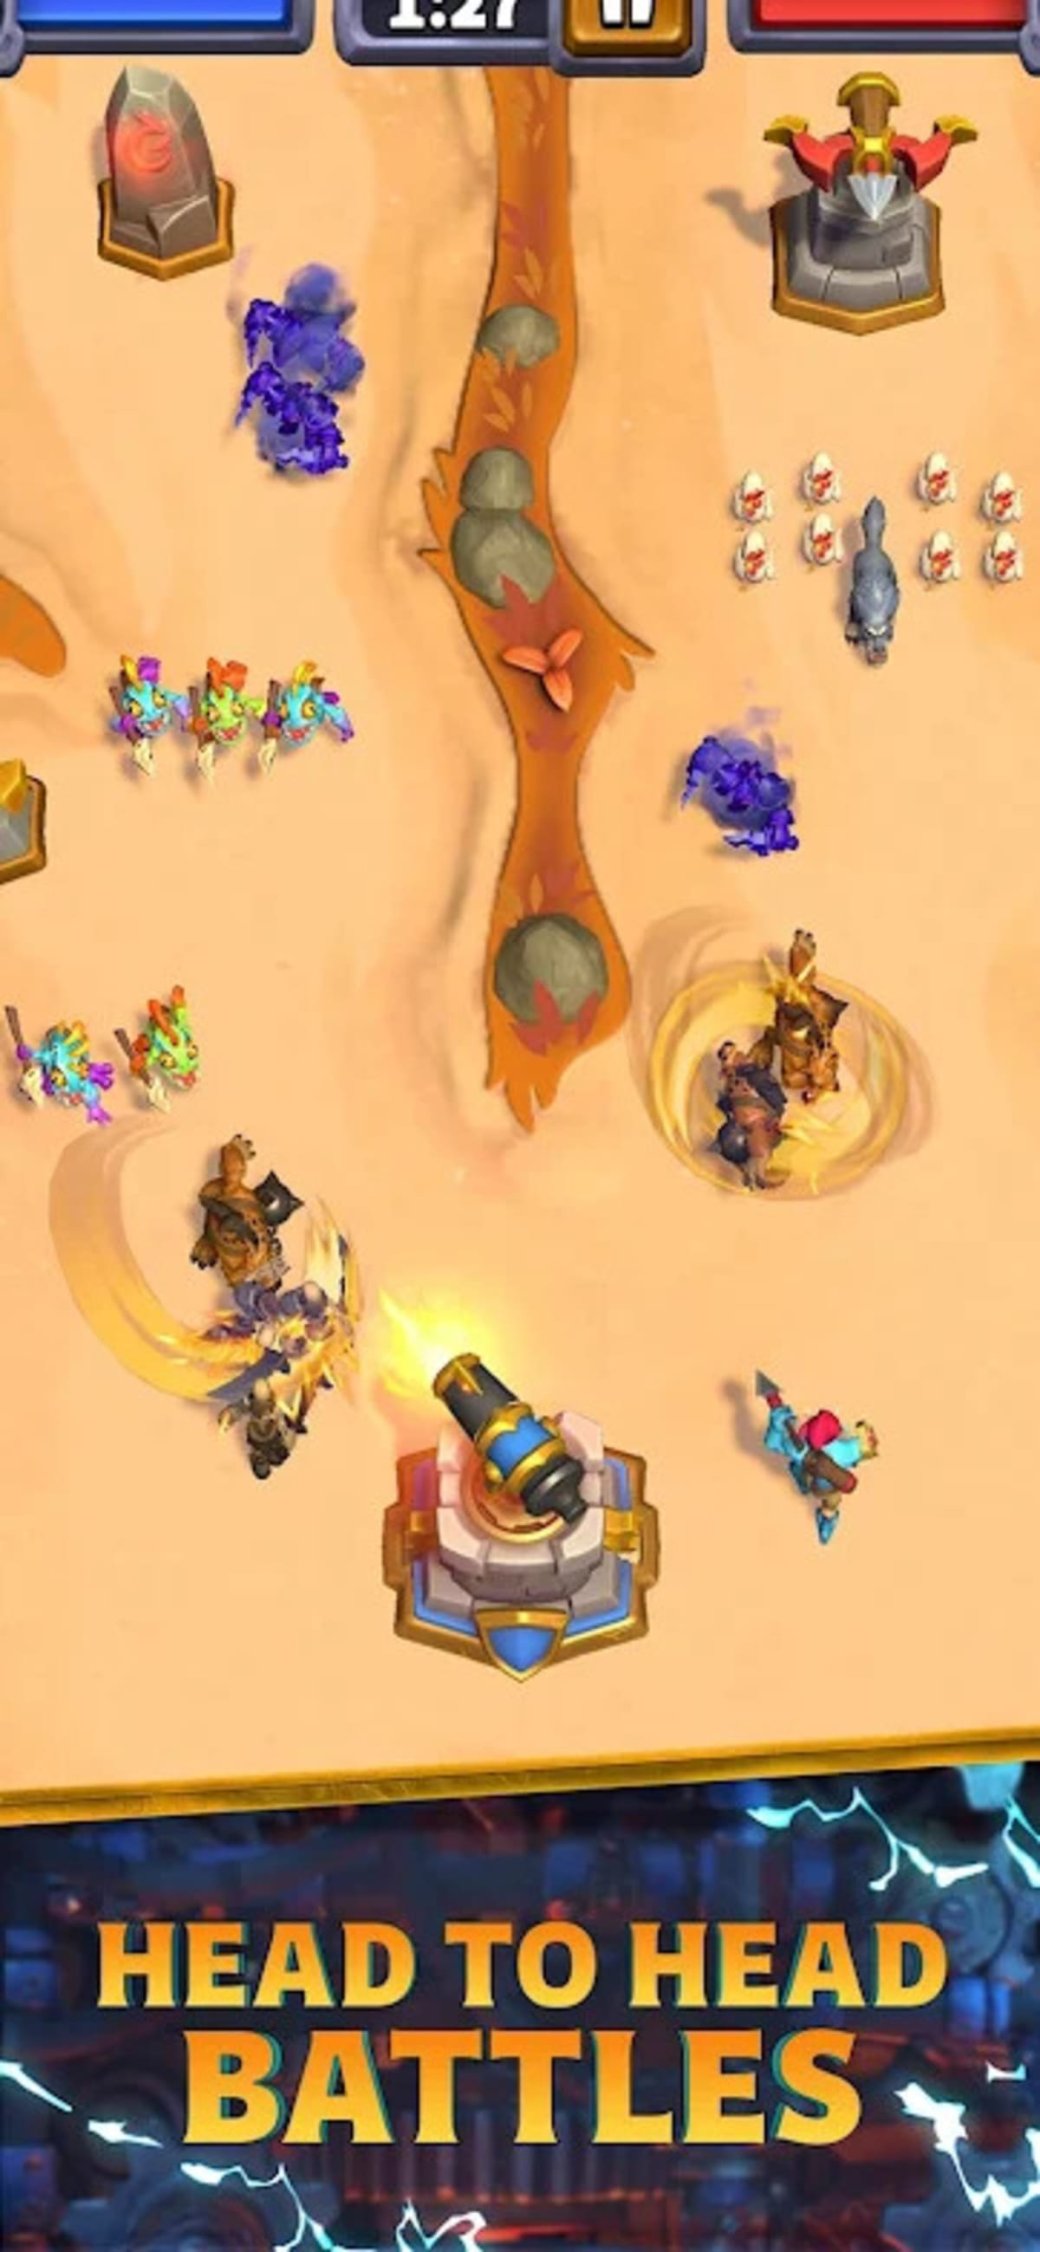 Галерея Blizzard анонсировала мобильную экшн-стратегию Warcraft Arclight Rumble - 5 фото